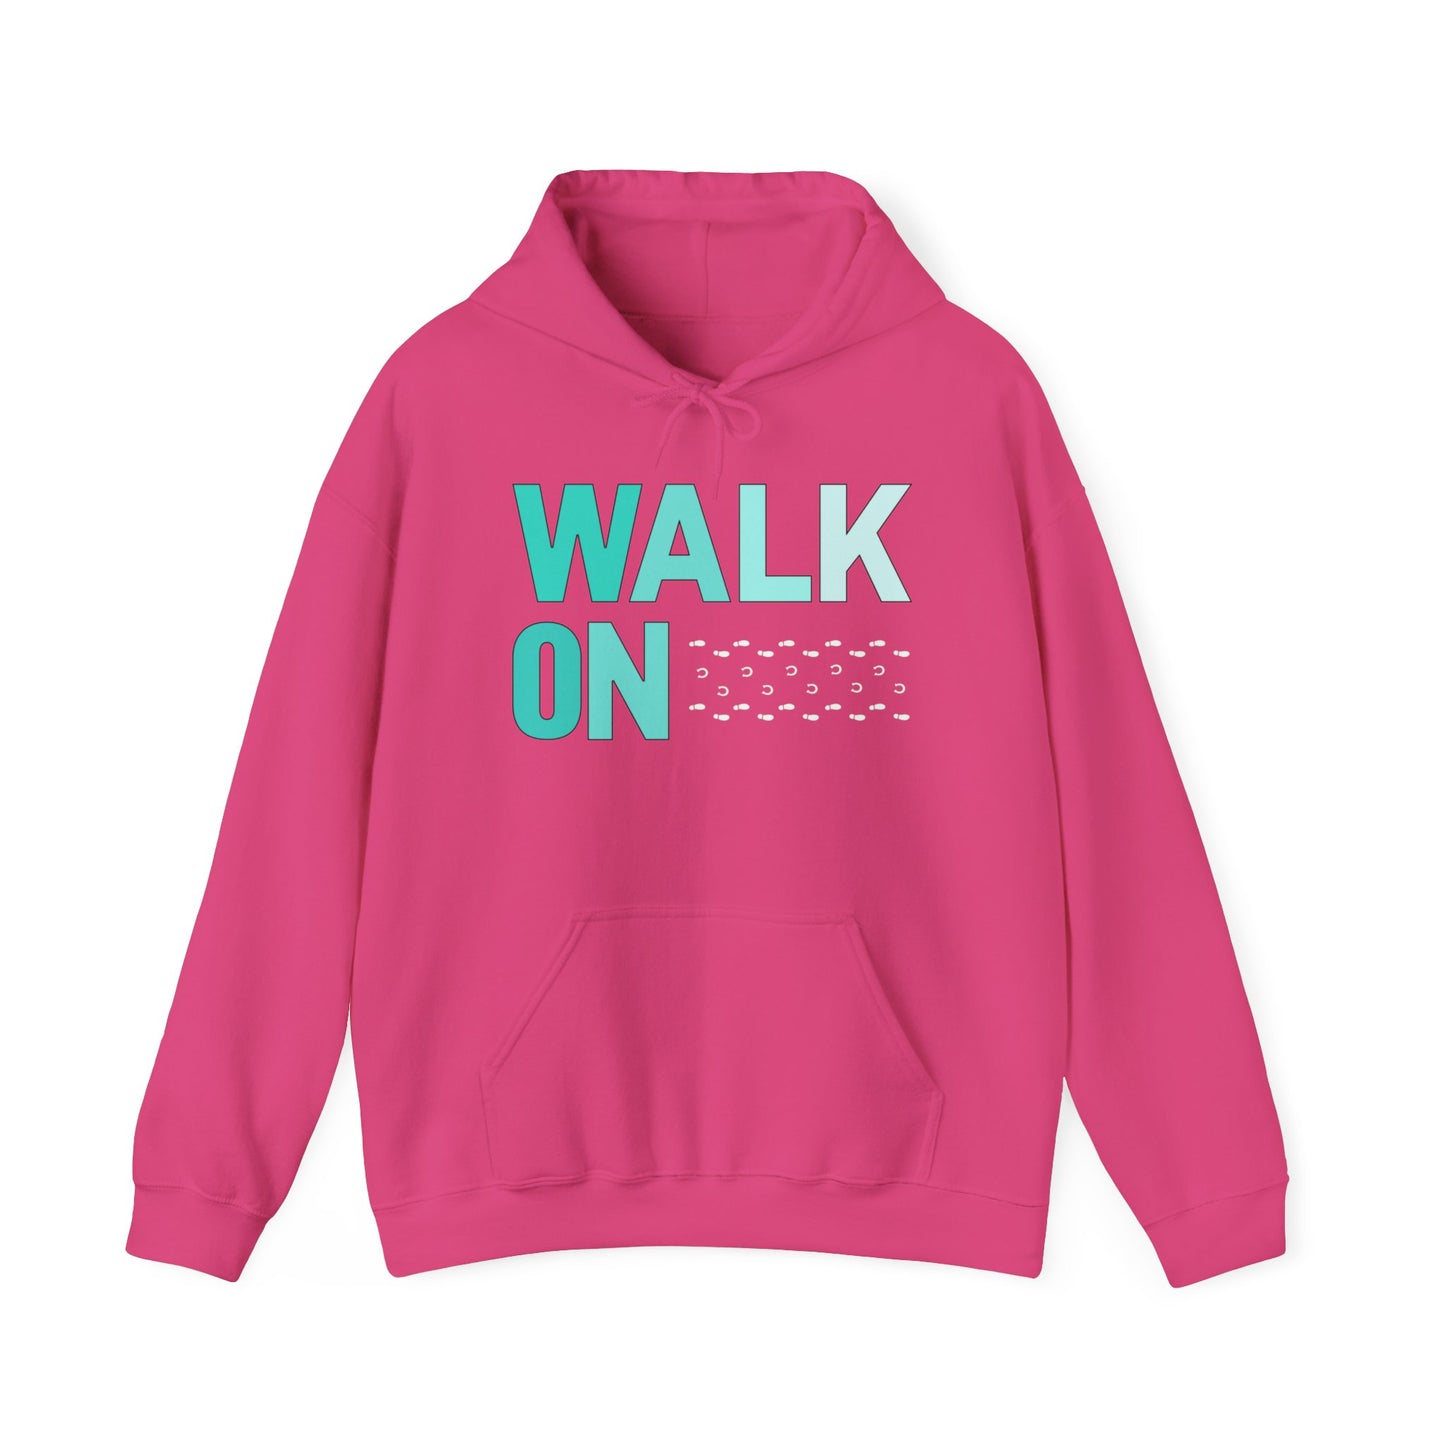 WALK ON hoodie- unisex fit hooded sweatshirt